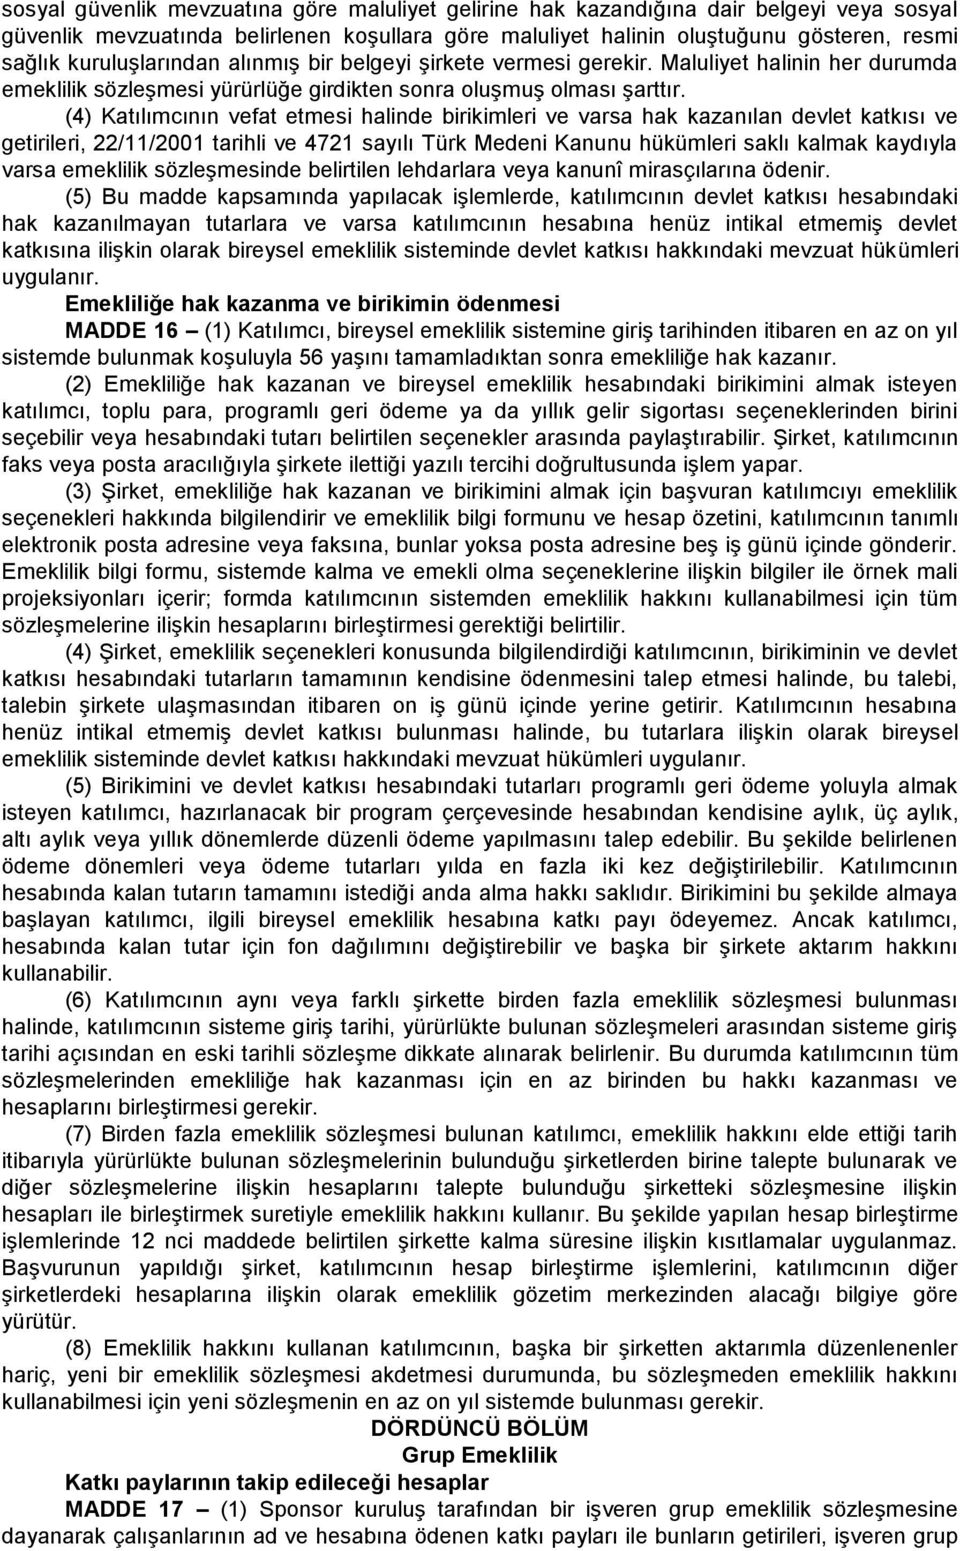 (4) Katılımcının vefat etmesi halinde birikimleri ve varsa hak kazanılan devlet katkısı ve getirileri, 22/11/2001 tarihli ve 4721 sayılı Türk Medeni Kanunu hükümleri saklı kalmak kaydıyla varsa